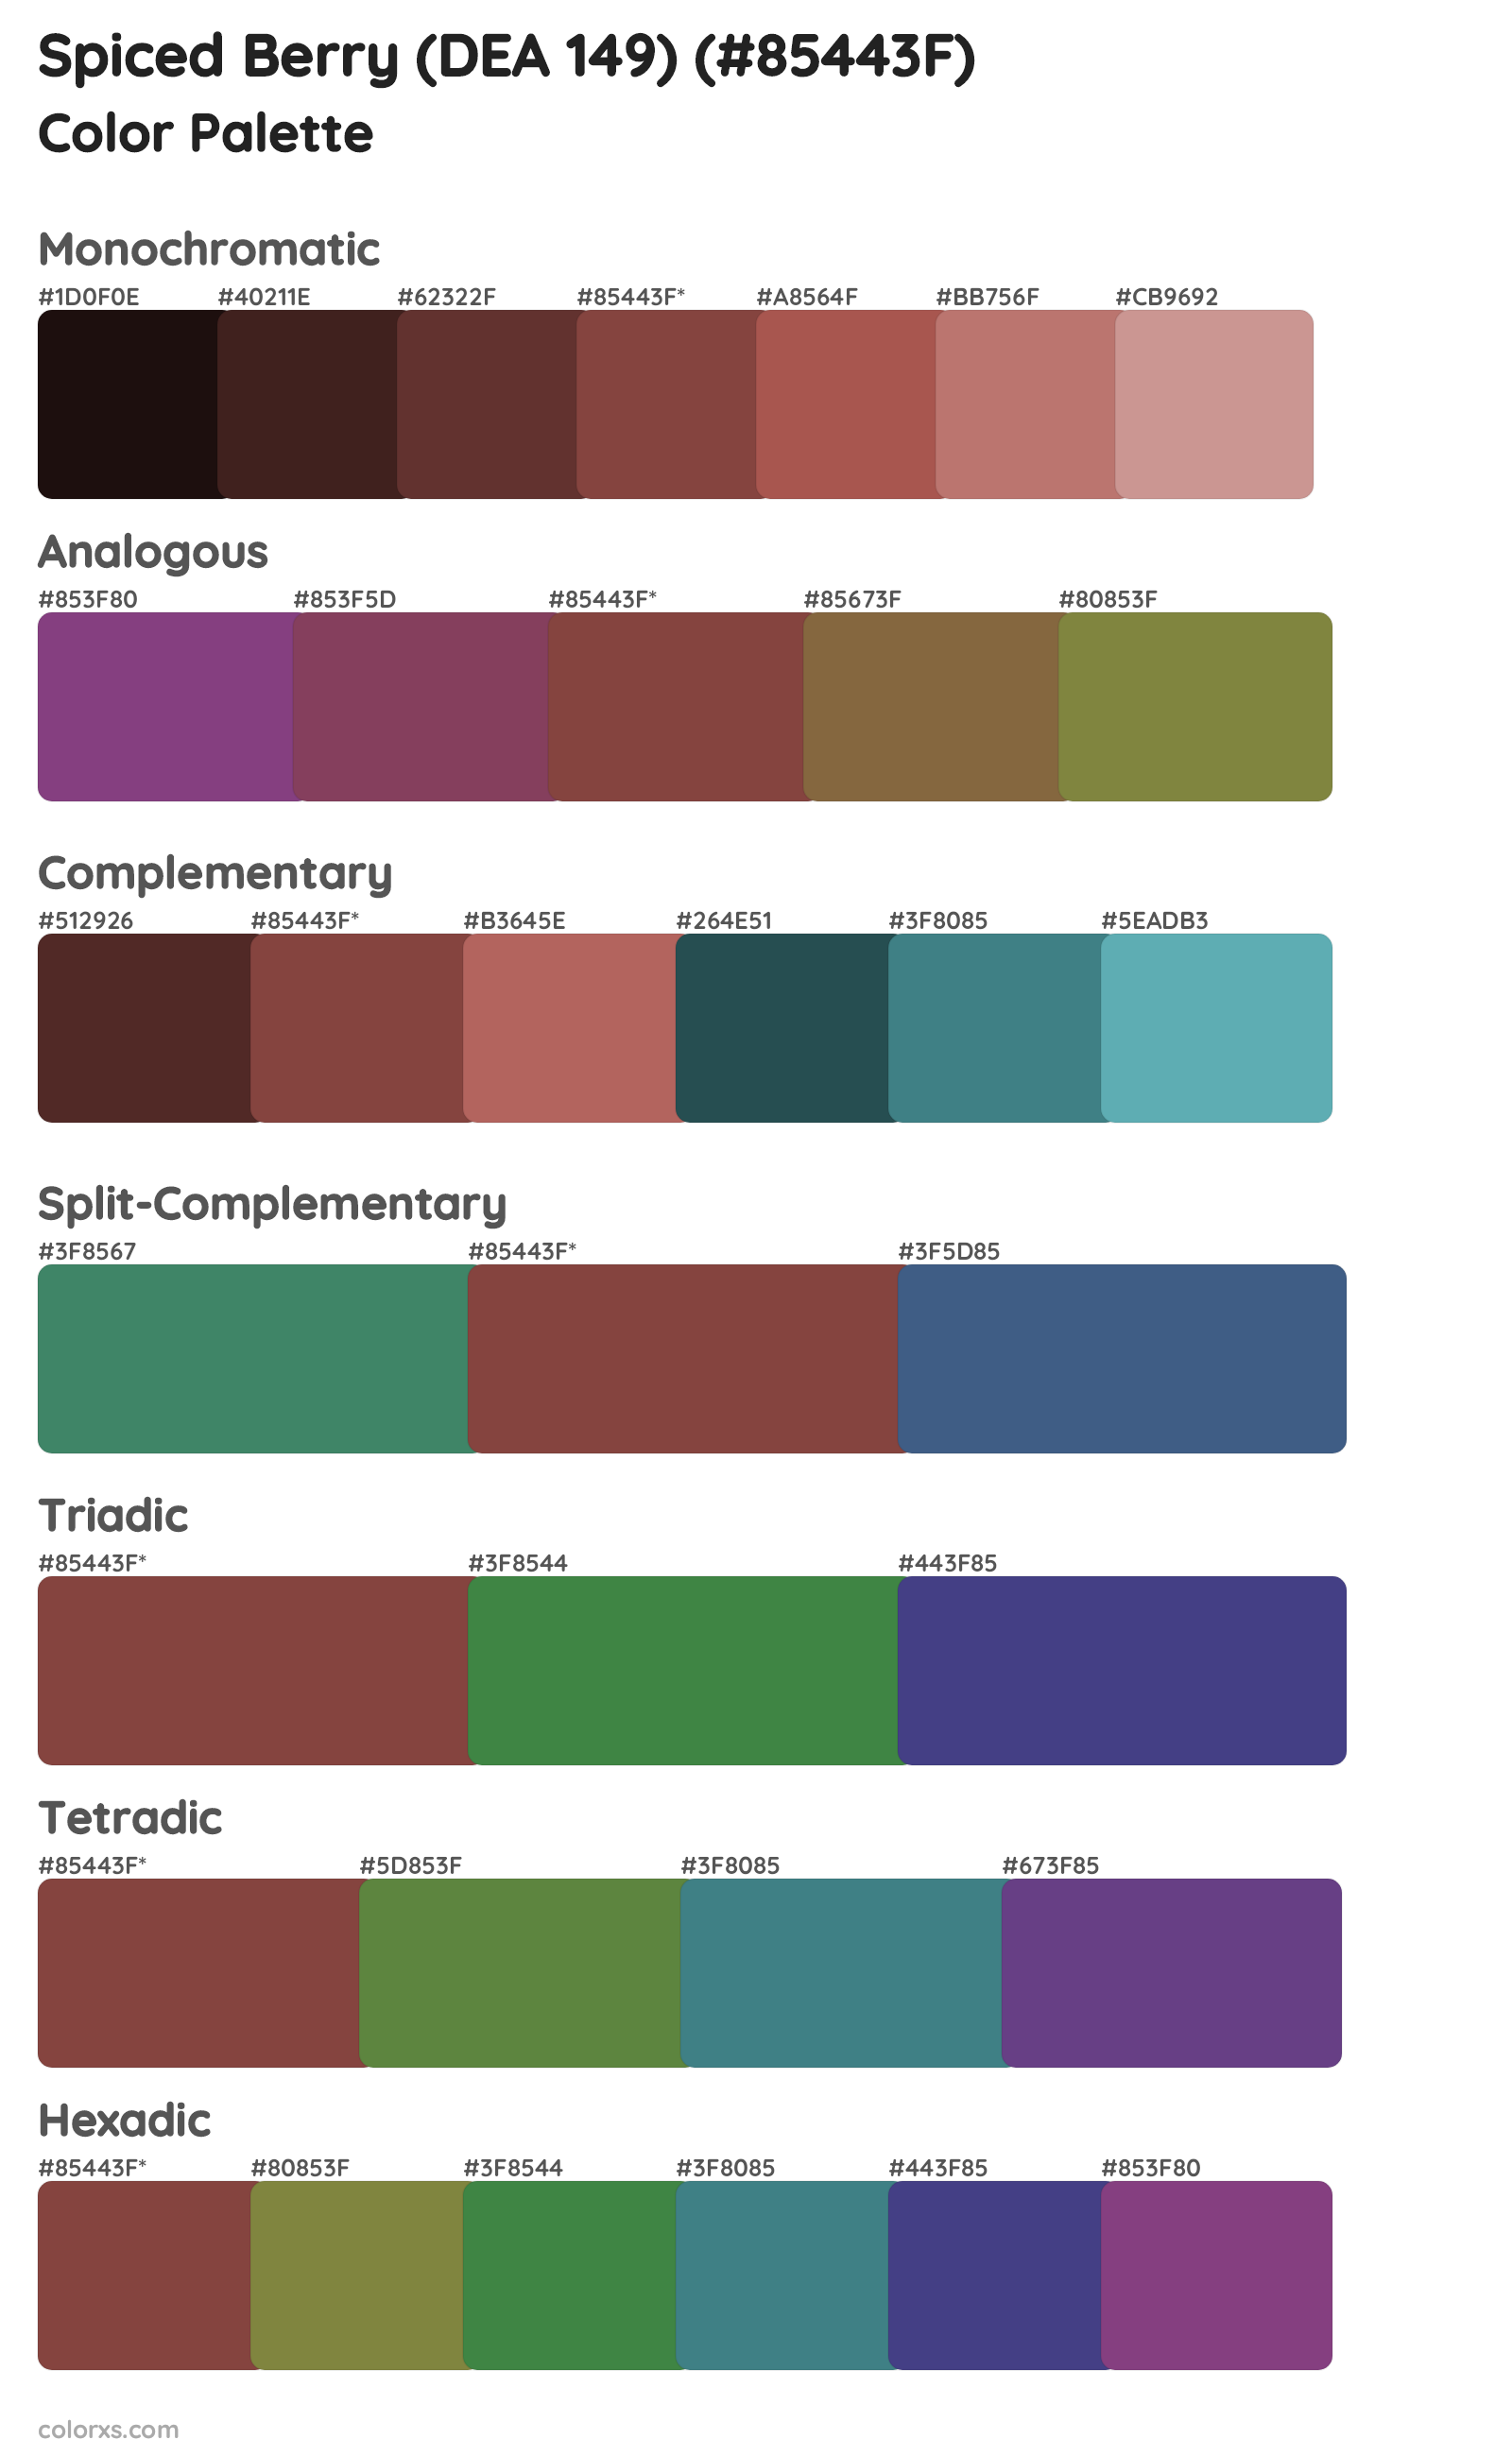 Spiced Berry (DEA 149) Color Scheme Palettes